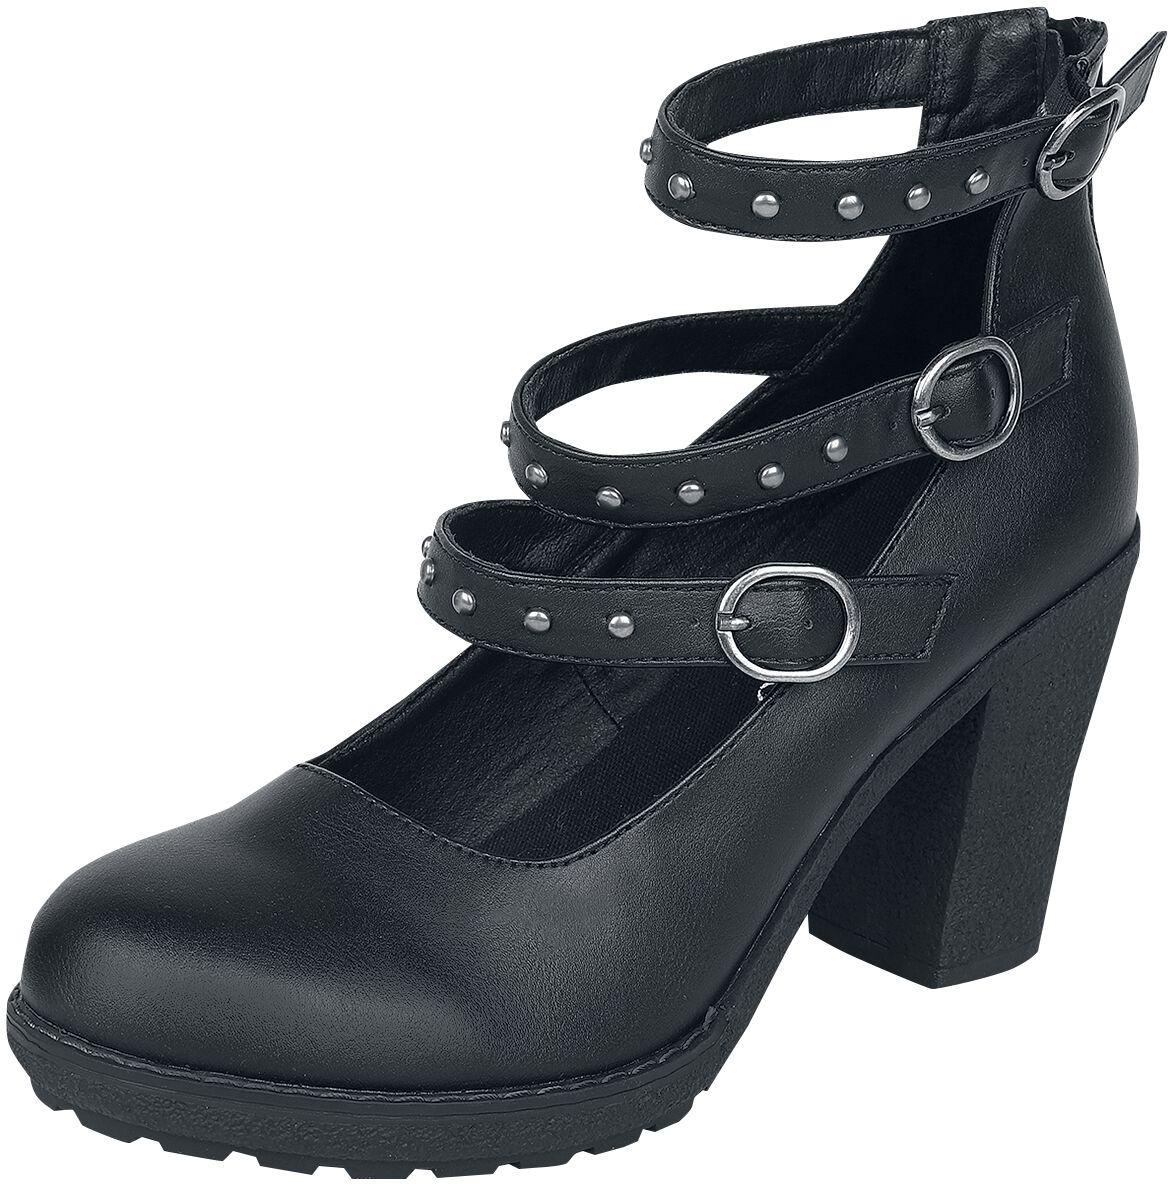 Gothicana by EMP - Gothic High Heel - High Heels mit Riemen und Nieten - EU37 bis EU41 - für Damen - Größe EU38 - schwarz